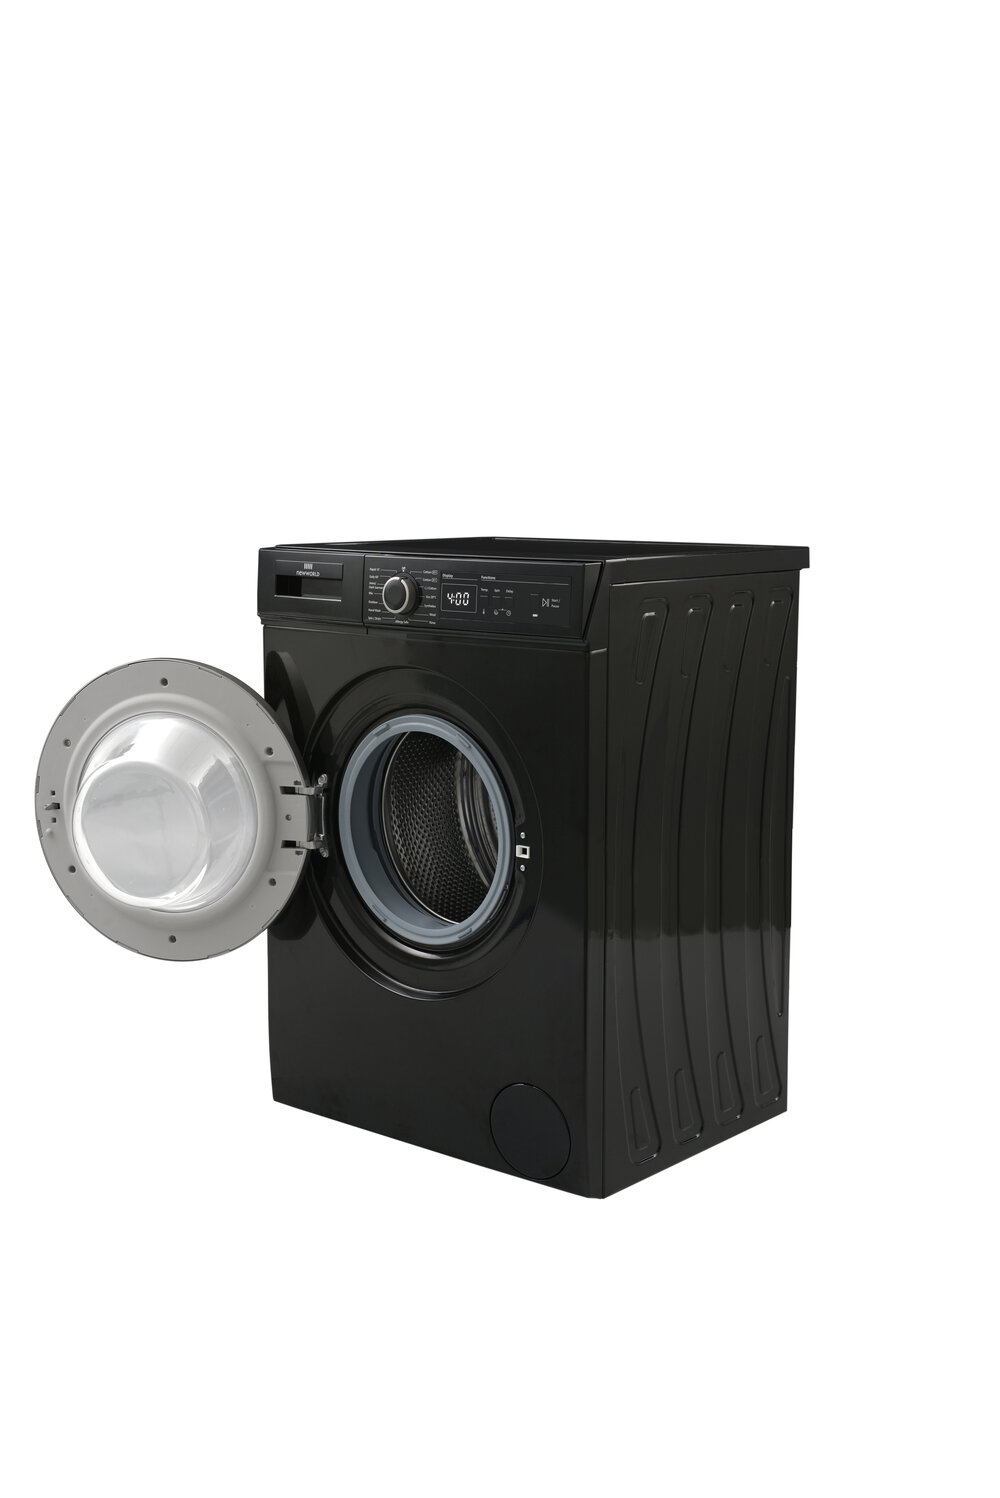 NWDHT814B 8KG 1400 Spin Washing Machine